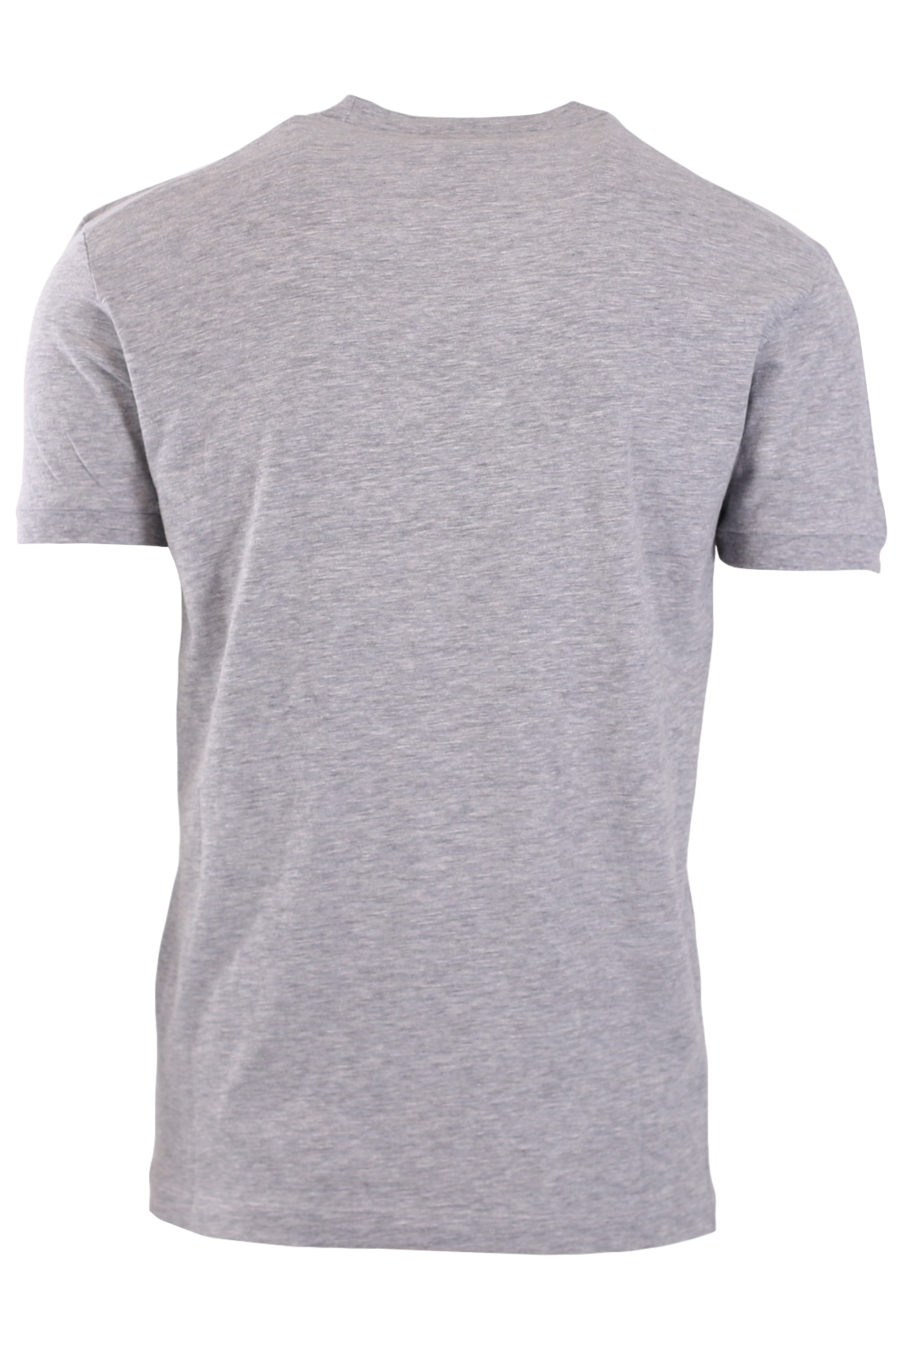 Camiseta gris con estampado desgastado - 8fa87ca5ab30bf7f24fddf143bb3dbbfc8820852